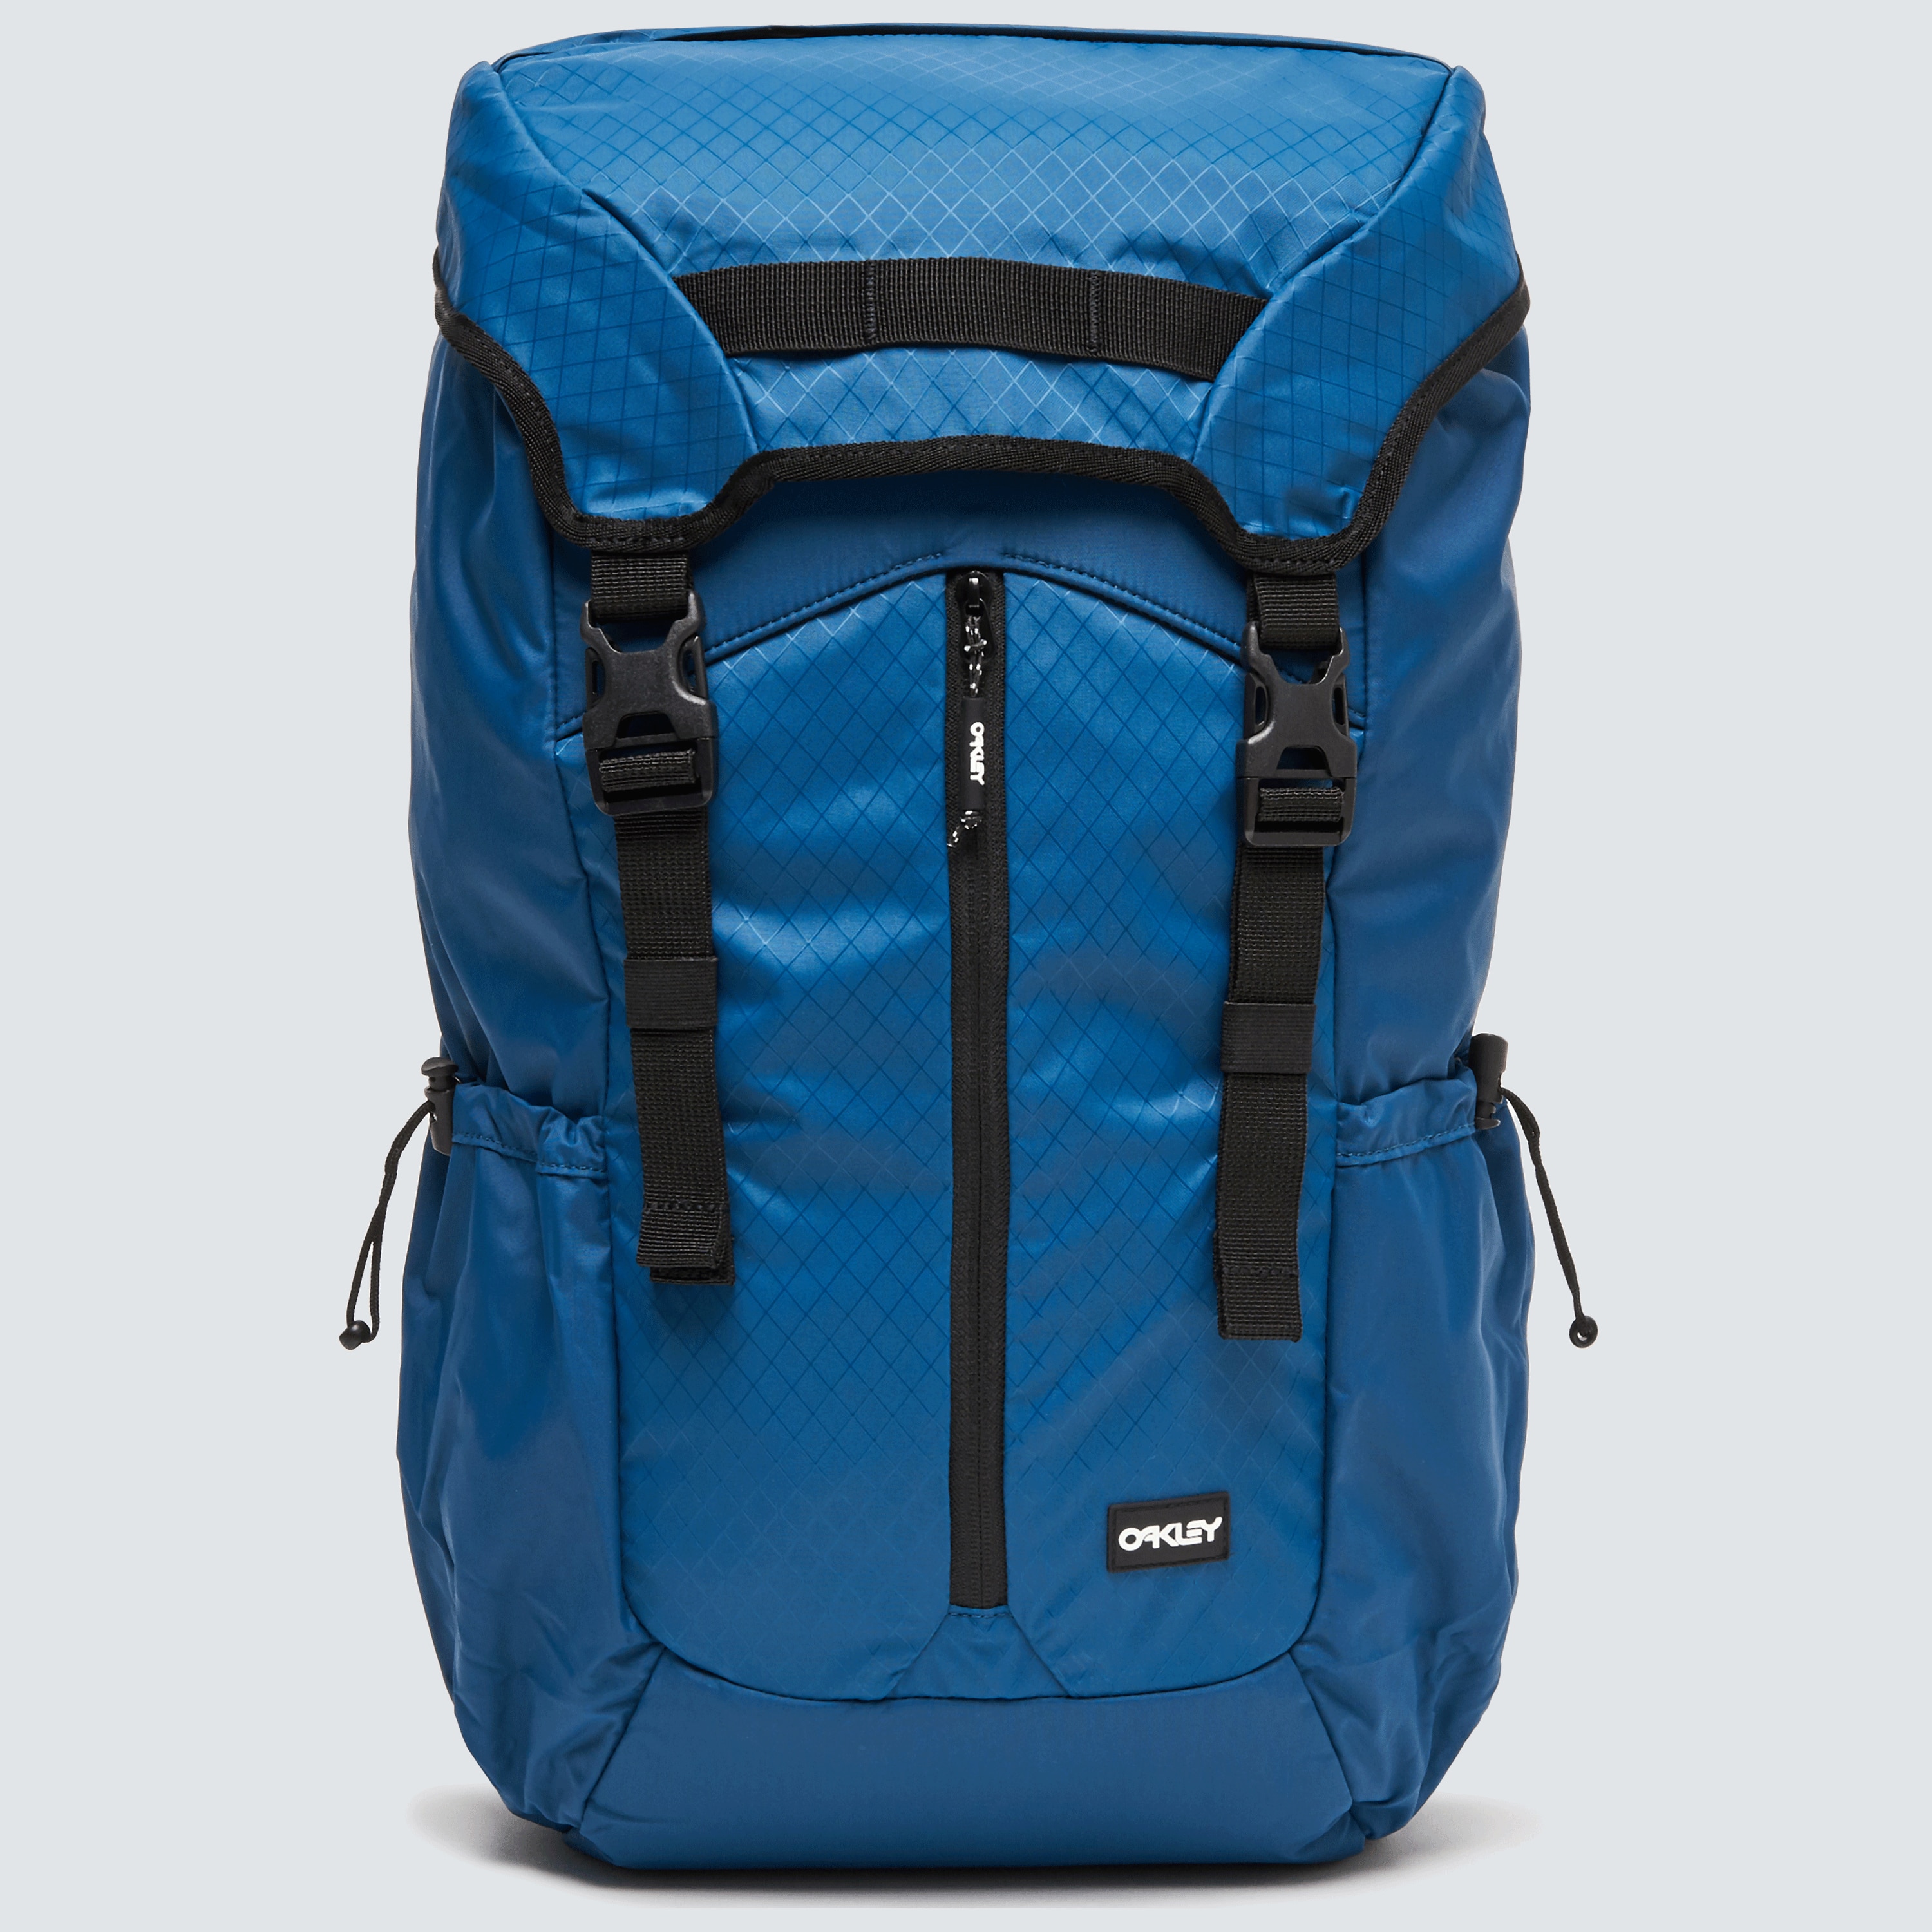 oakley voyager backpack